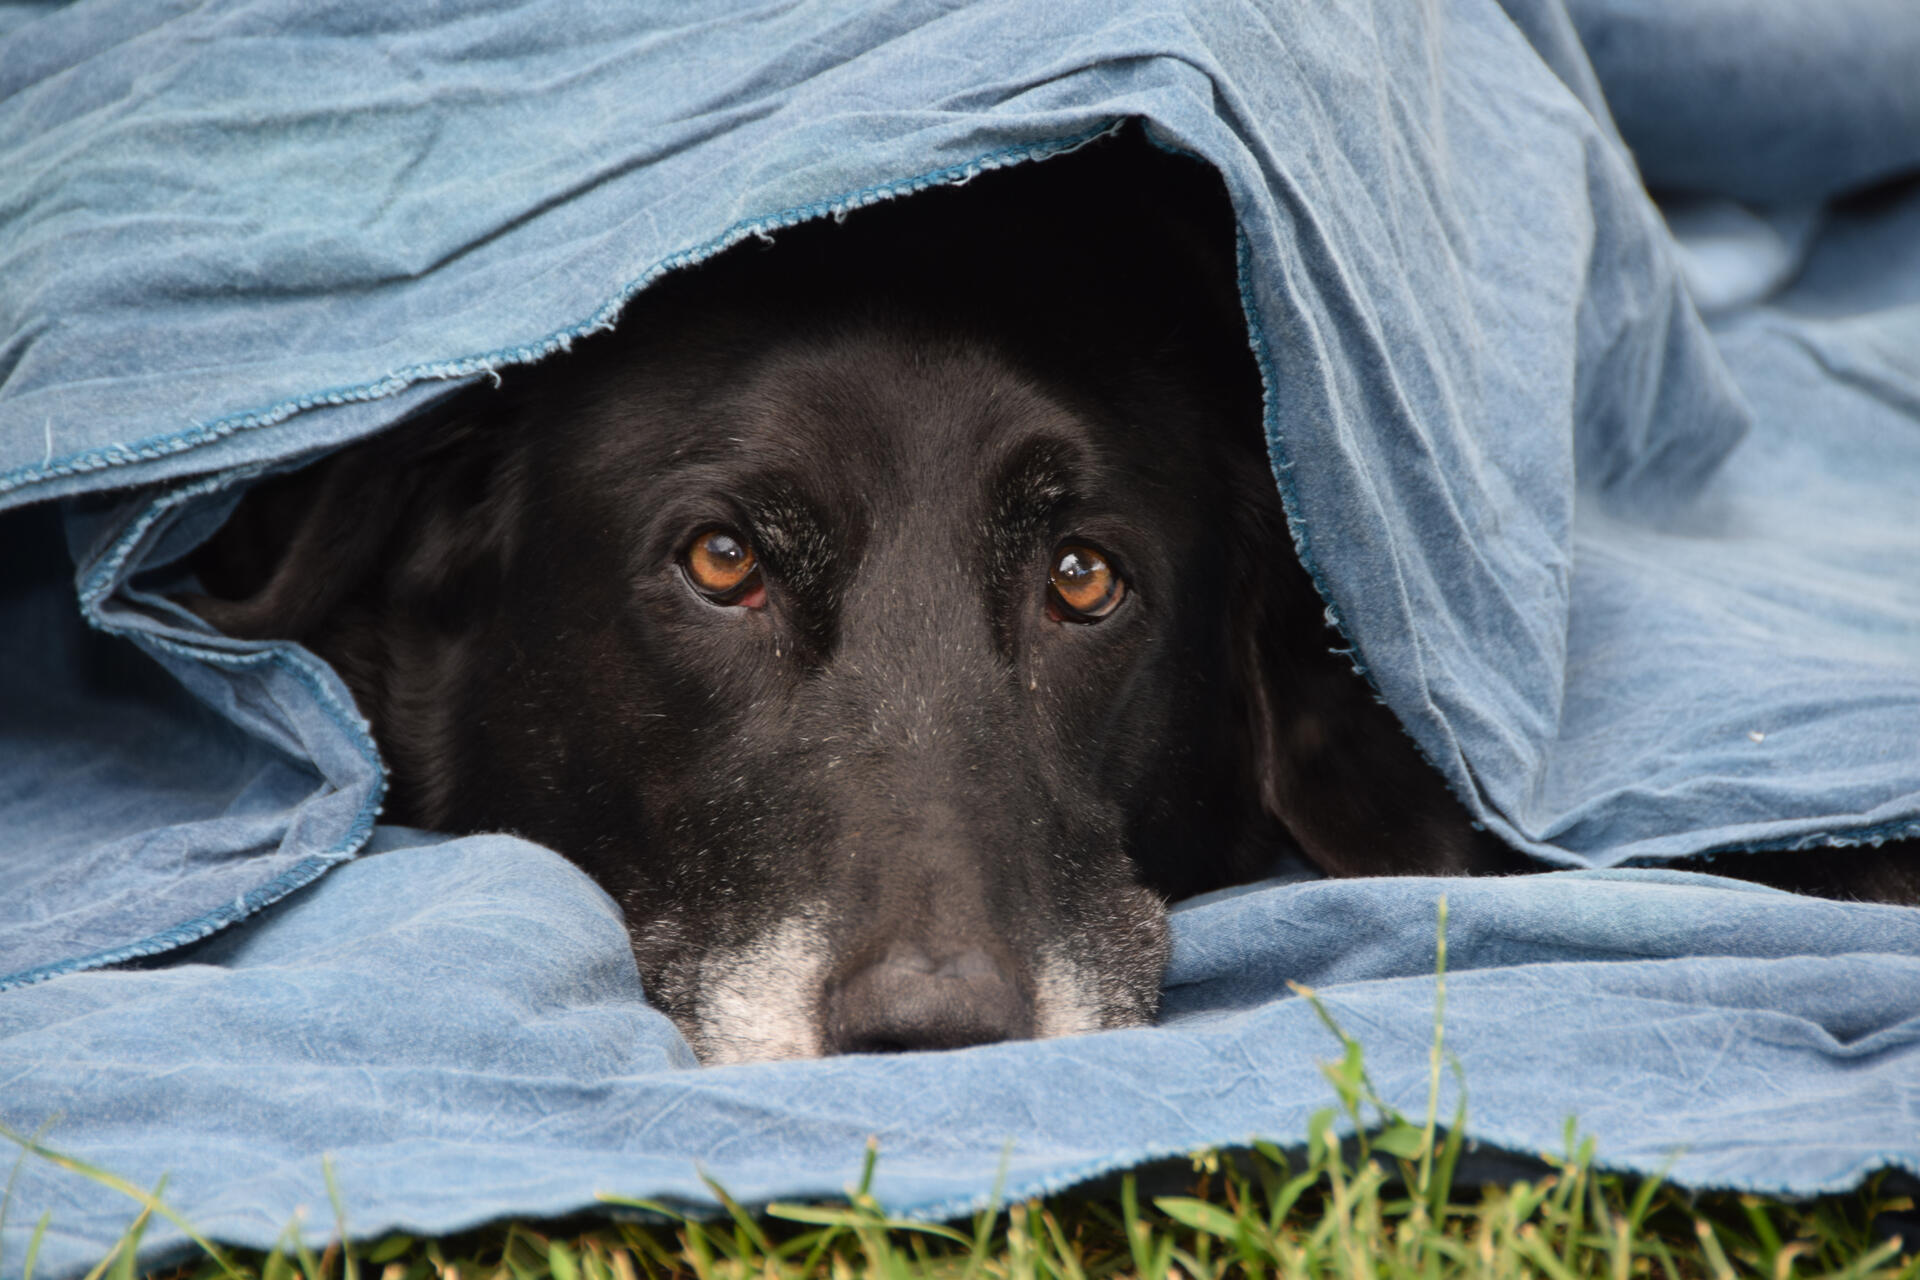 A dog sitting under a blue blanket